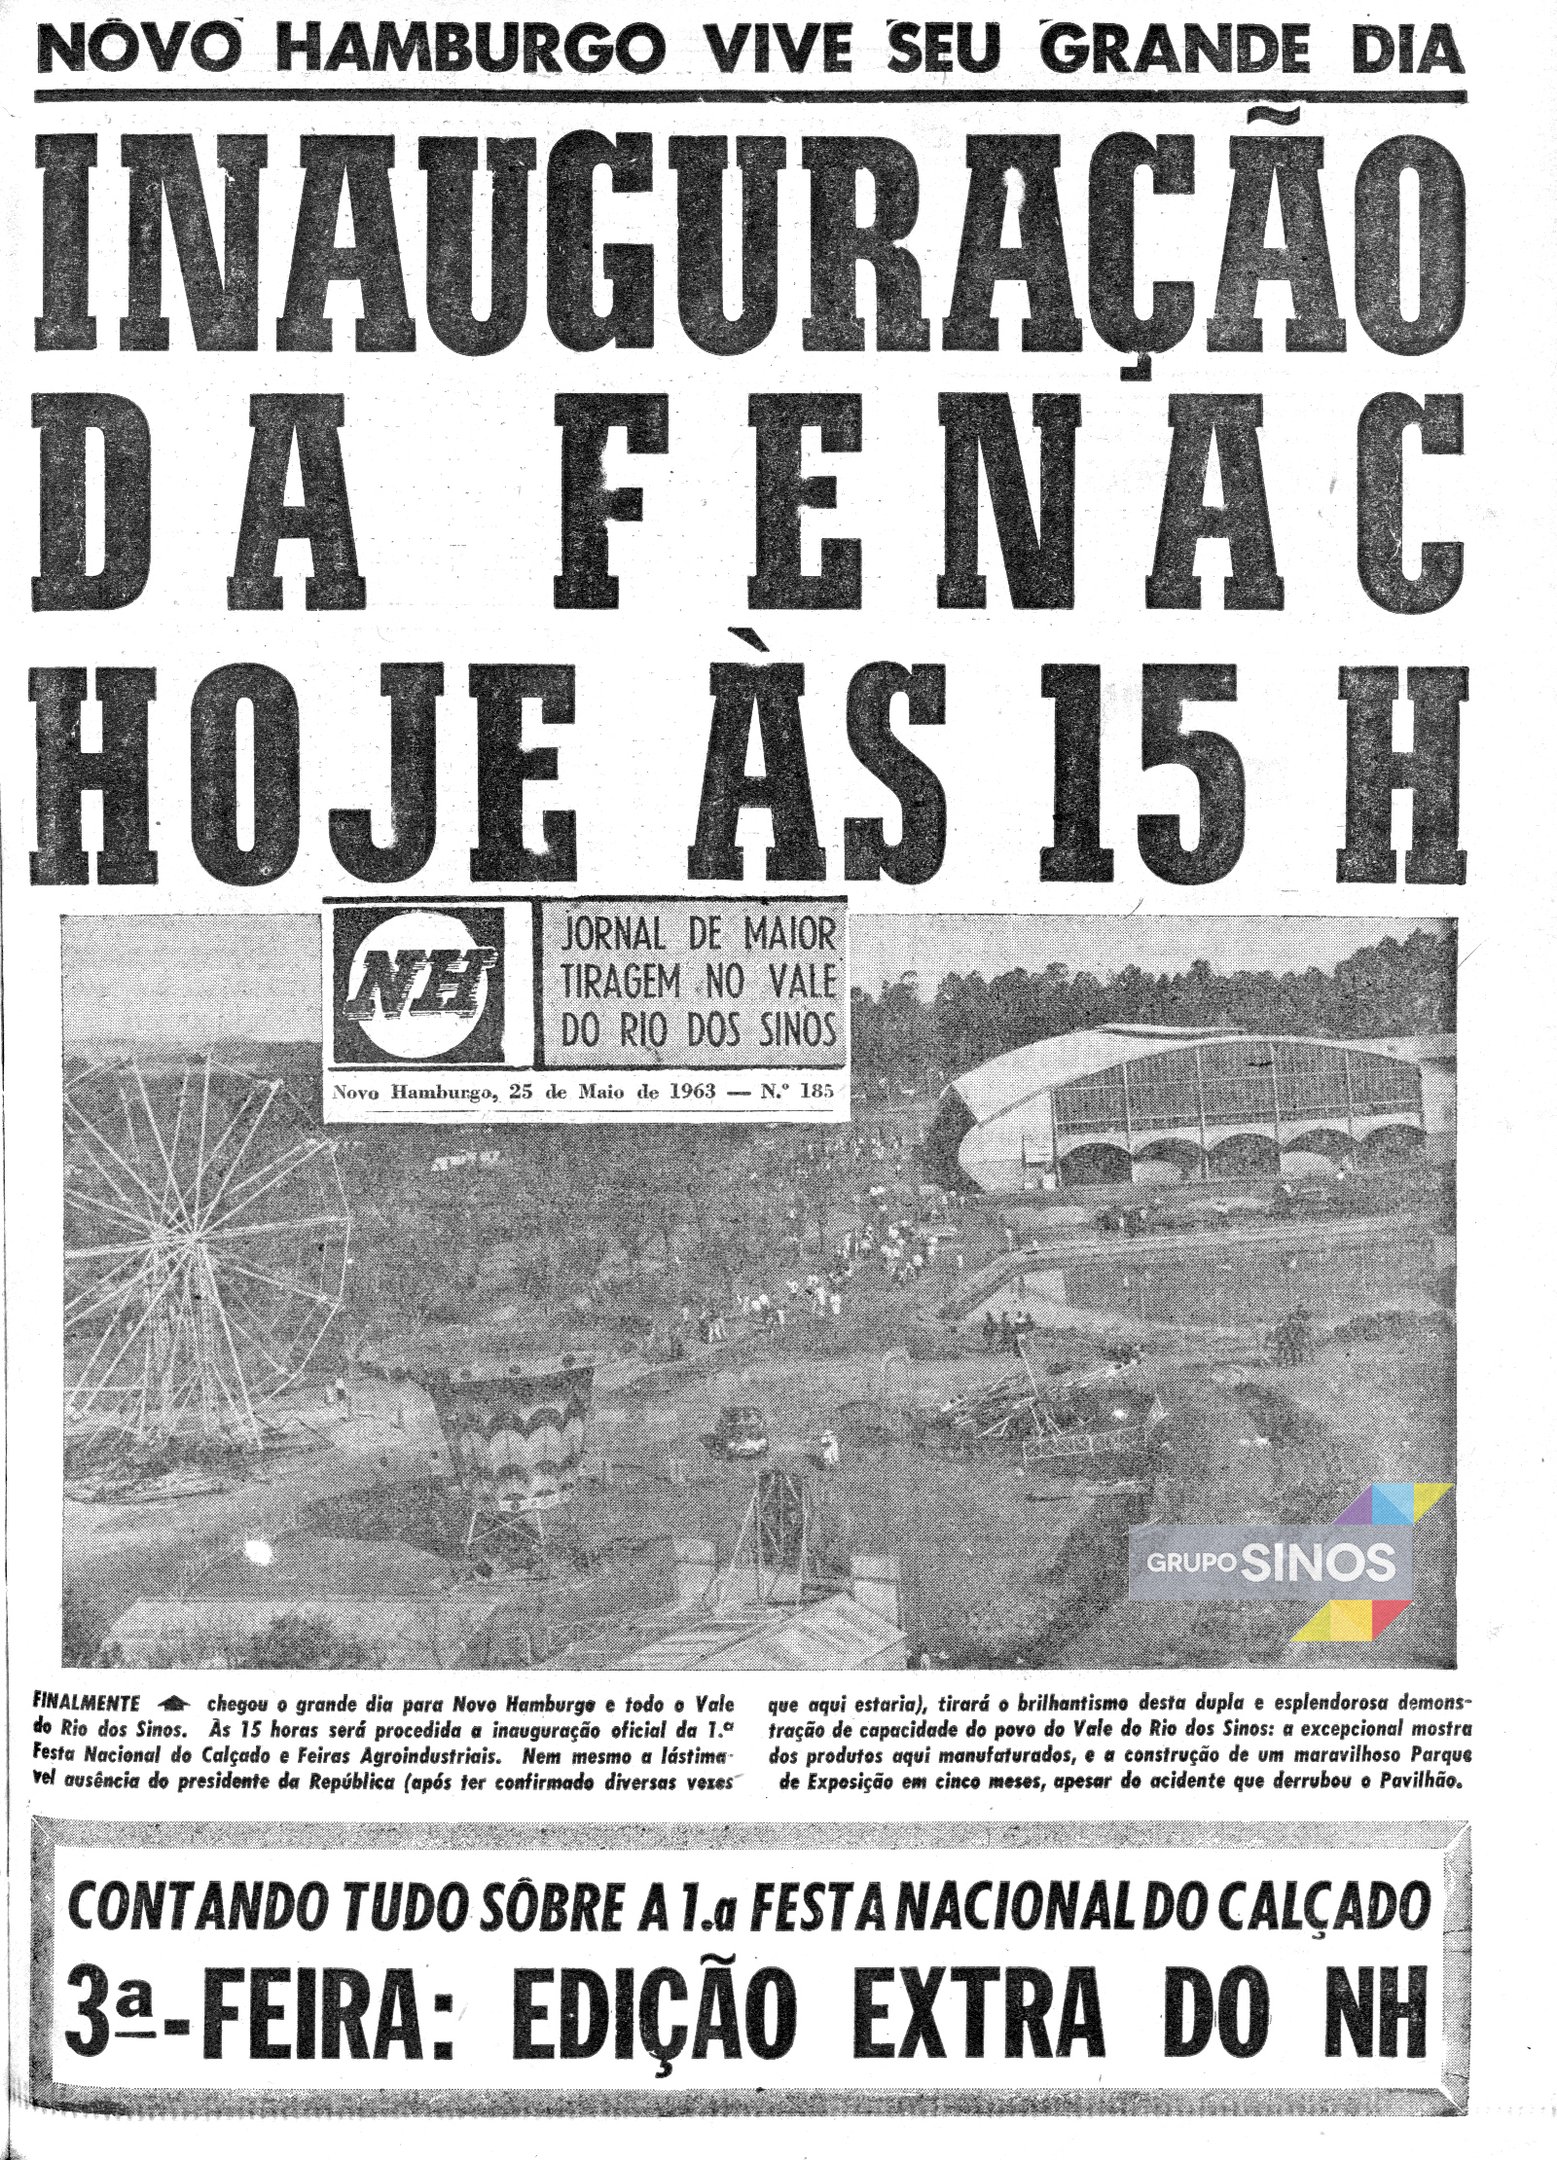 SETOR COUREIRO-CALÇADISTA: Há exatos 60 anos iniciava a primeira edição da Fenac, em Novo Hamburgo